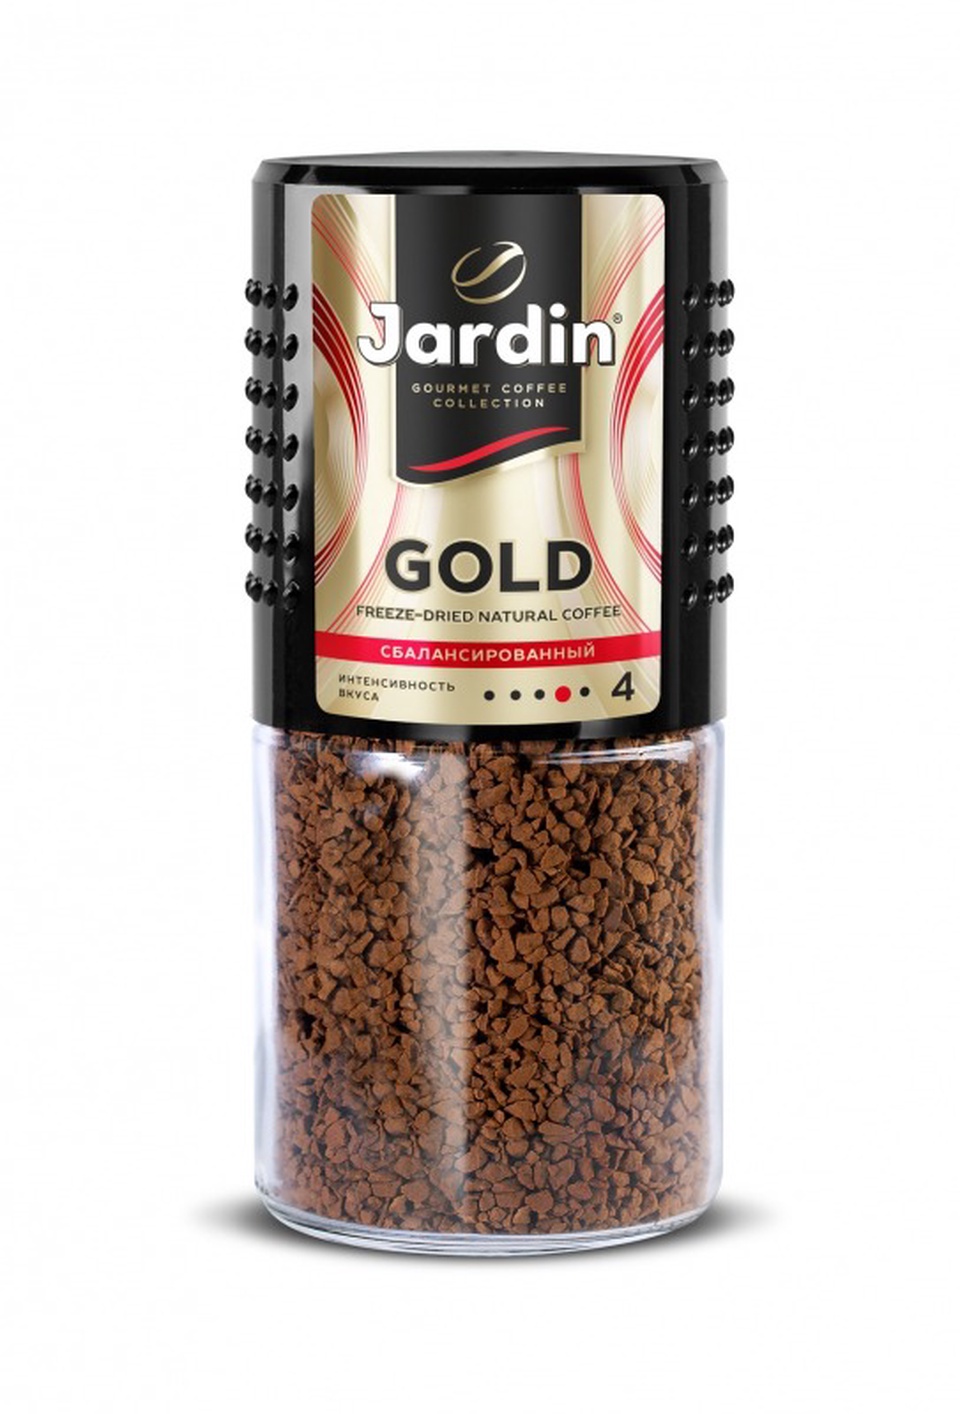 Кофе Jardin GOLD ст/б 95г - 180,89 ₽, заказать онлайн.